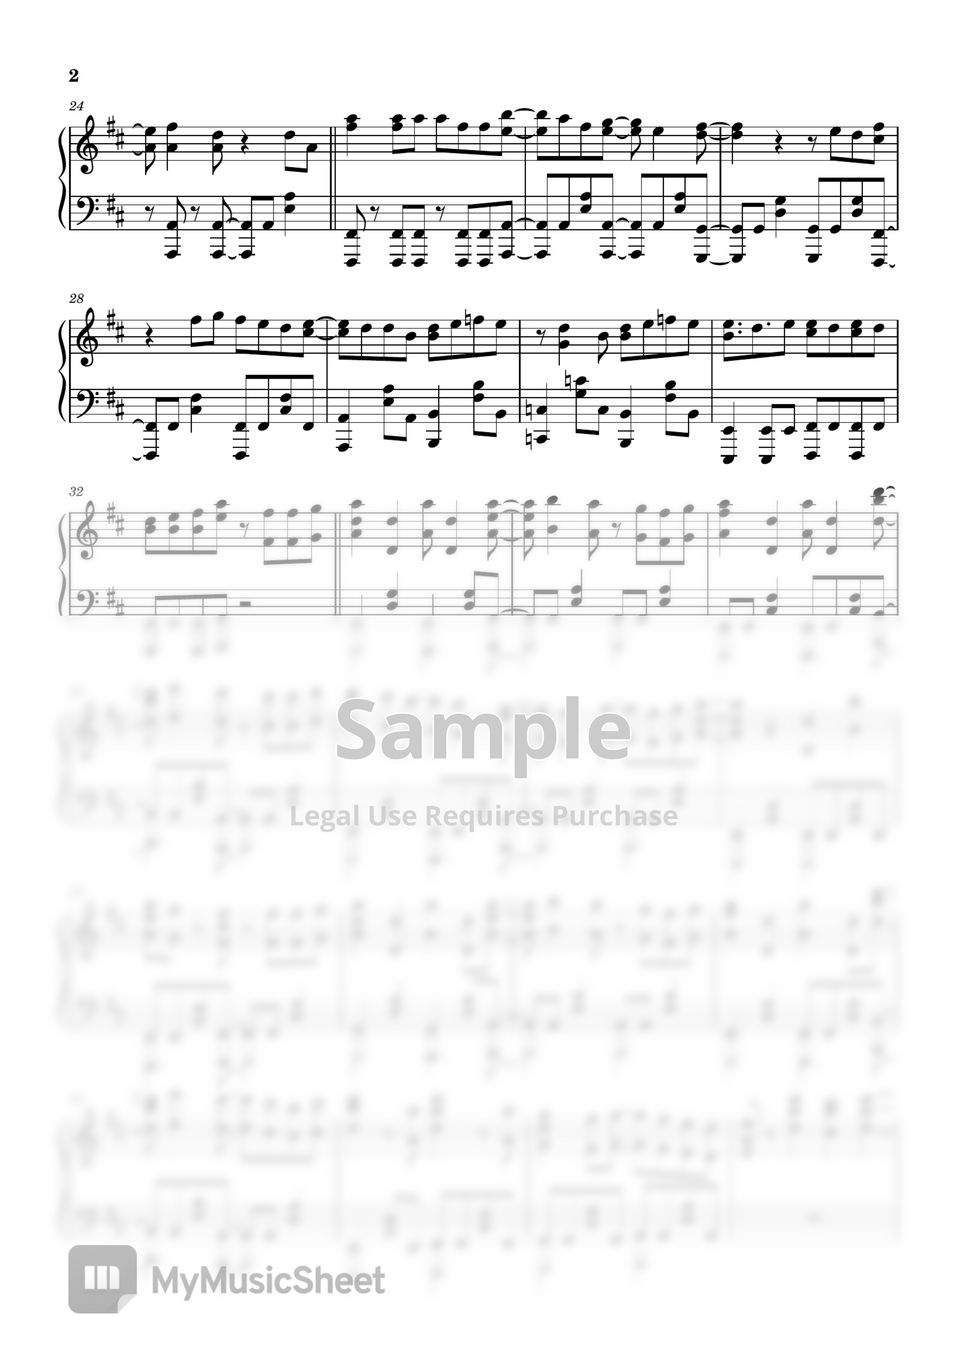 ねんね - ミライ＝テレポート Full Version (Lv1魔王とワンルーム勇者ED) --WITH MIDI+WAV+Musescore Secret Link by Karson Chan